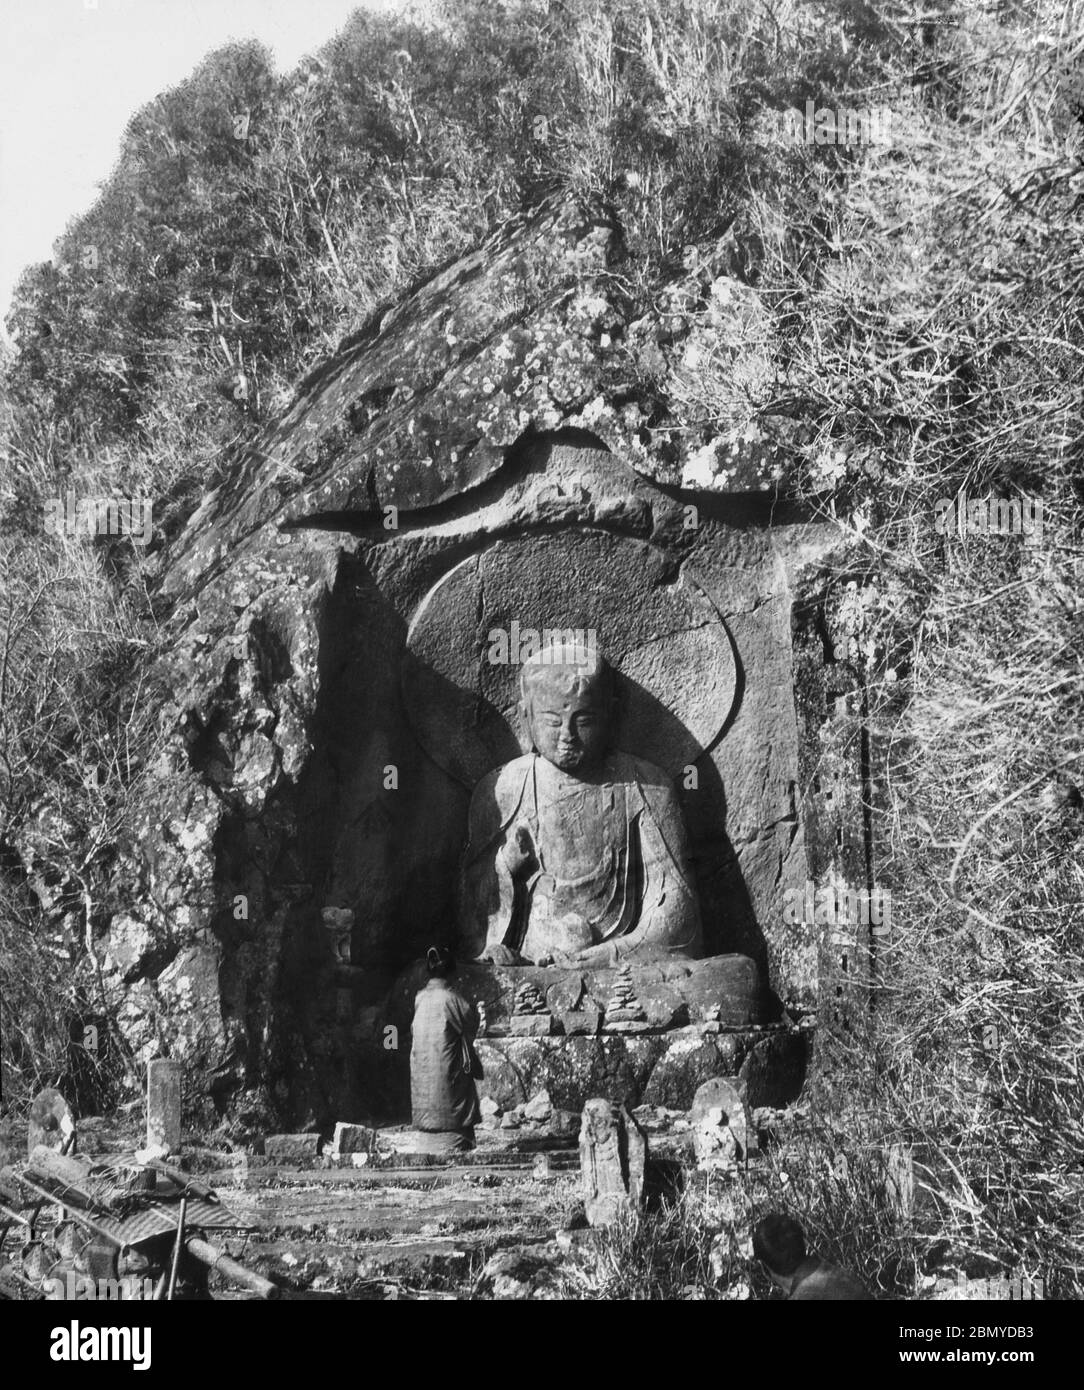 [ 1890er Jahre Japan - Japanische Buddhistische Statue ] - Beten an einer Statue der buddhistischen Gottheit Jizo in Hakone, Präfektur Kanagawa. Bekannt als Rokudo Jizo (六道地蔵), ist es eine 3.5 Meter hohe Buddha-Figur, die auf einer Felswand geschnitzt wurde und aus der Kamakura-Zeit (1185-1333) stammt. Aus einer Serie von Glasdias, die vom schottischen Fotografen George Washington Wilson (1823–1893) veröffentlicht (aber nicht fotografiert) wurden. Wilsons Firma war einer der größten Verleger von Fotodrucken in der Welt. 19. Jahrhundert Vintage Glas Rutsche. Stockfoto